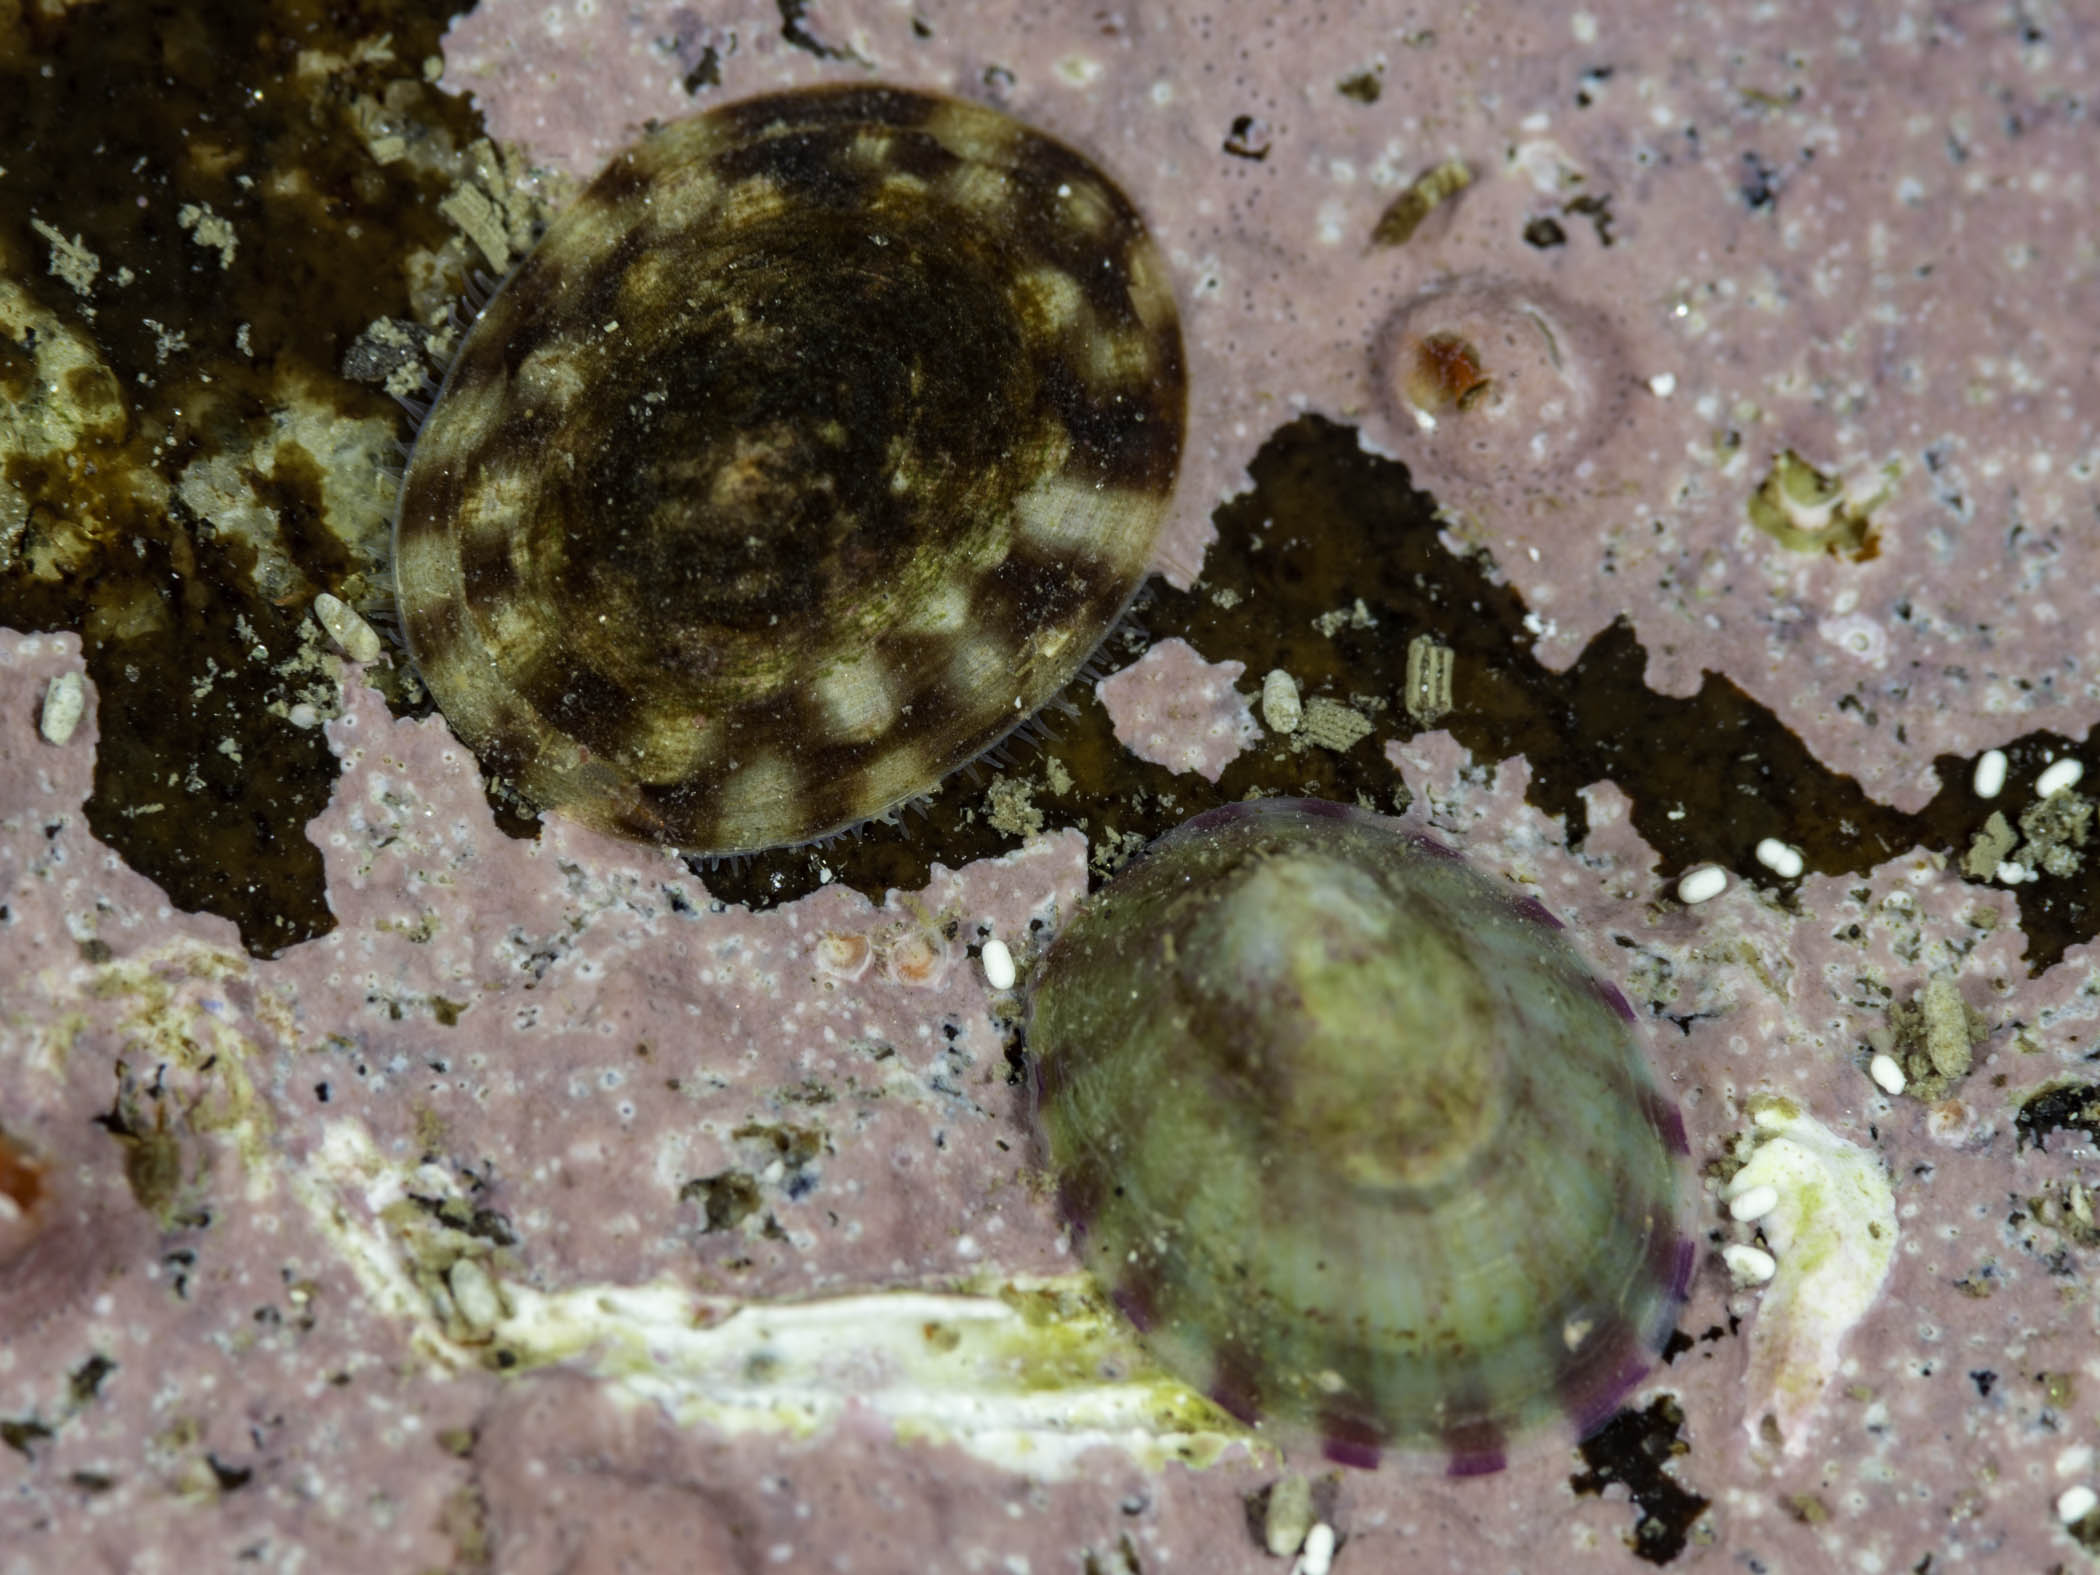 image: Testudinalia testudinalis. Tortoiseshell limpet and white tortoiseshell limpet on coralline encrusted rock, Saltstraumen, Norway.